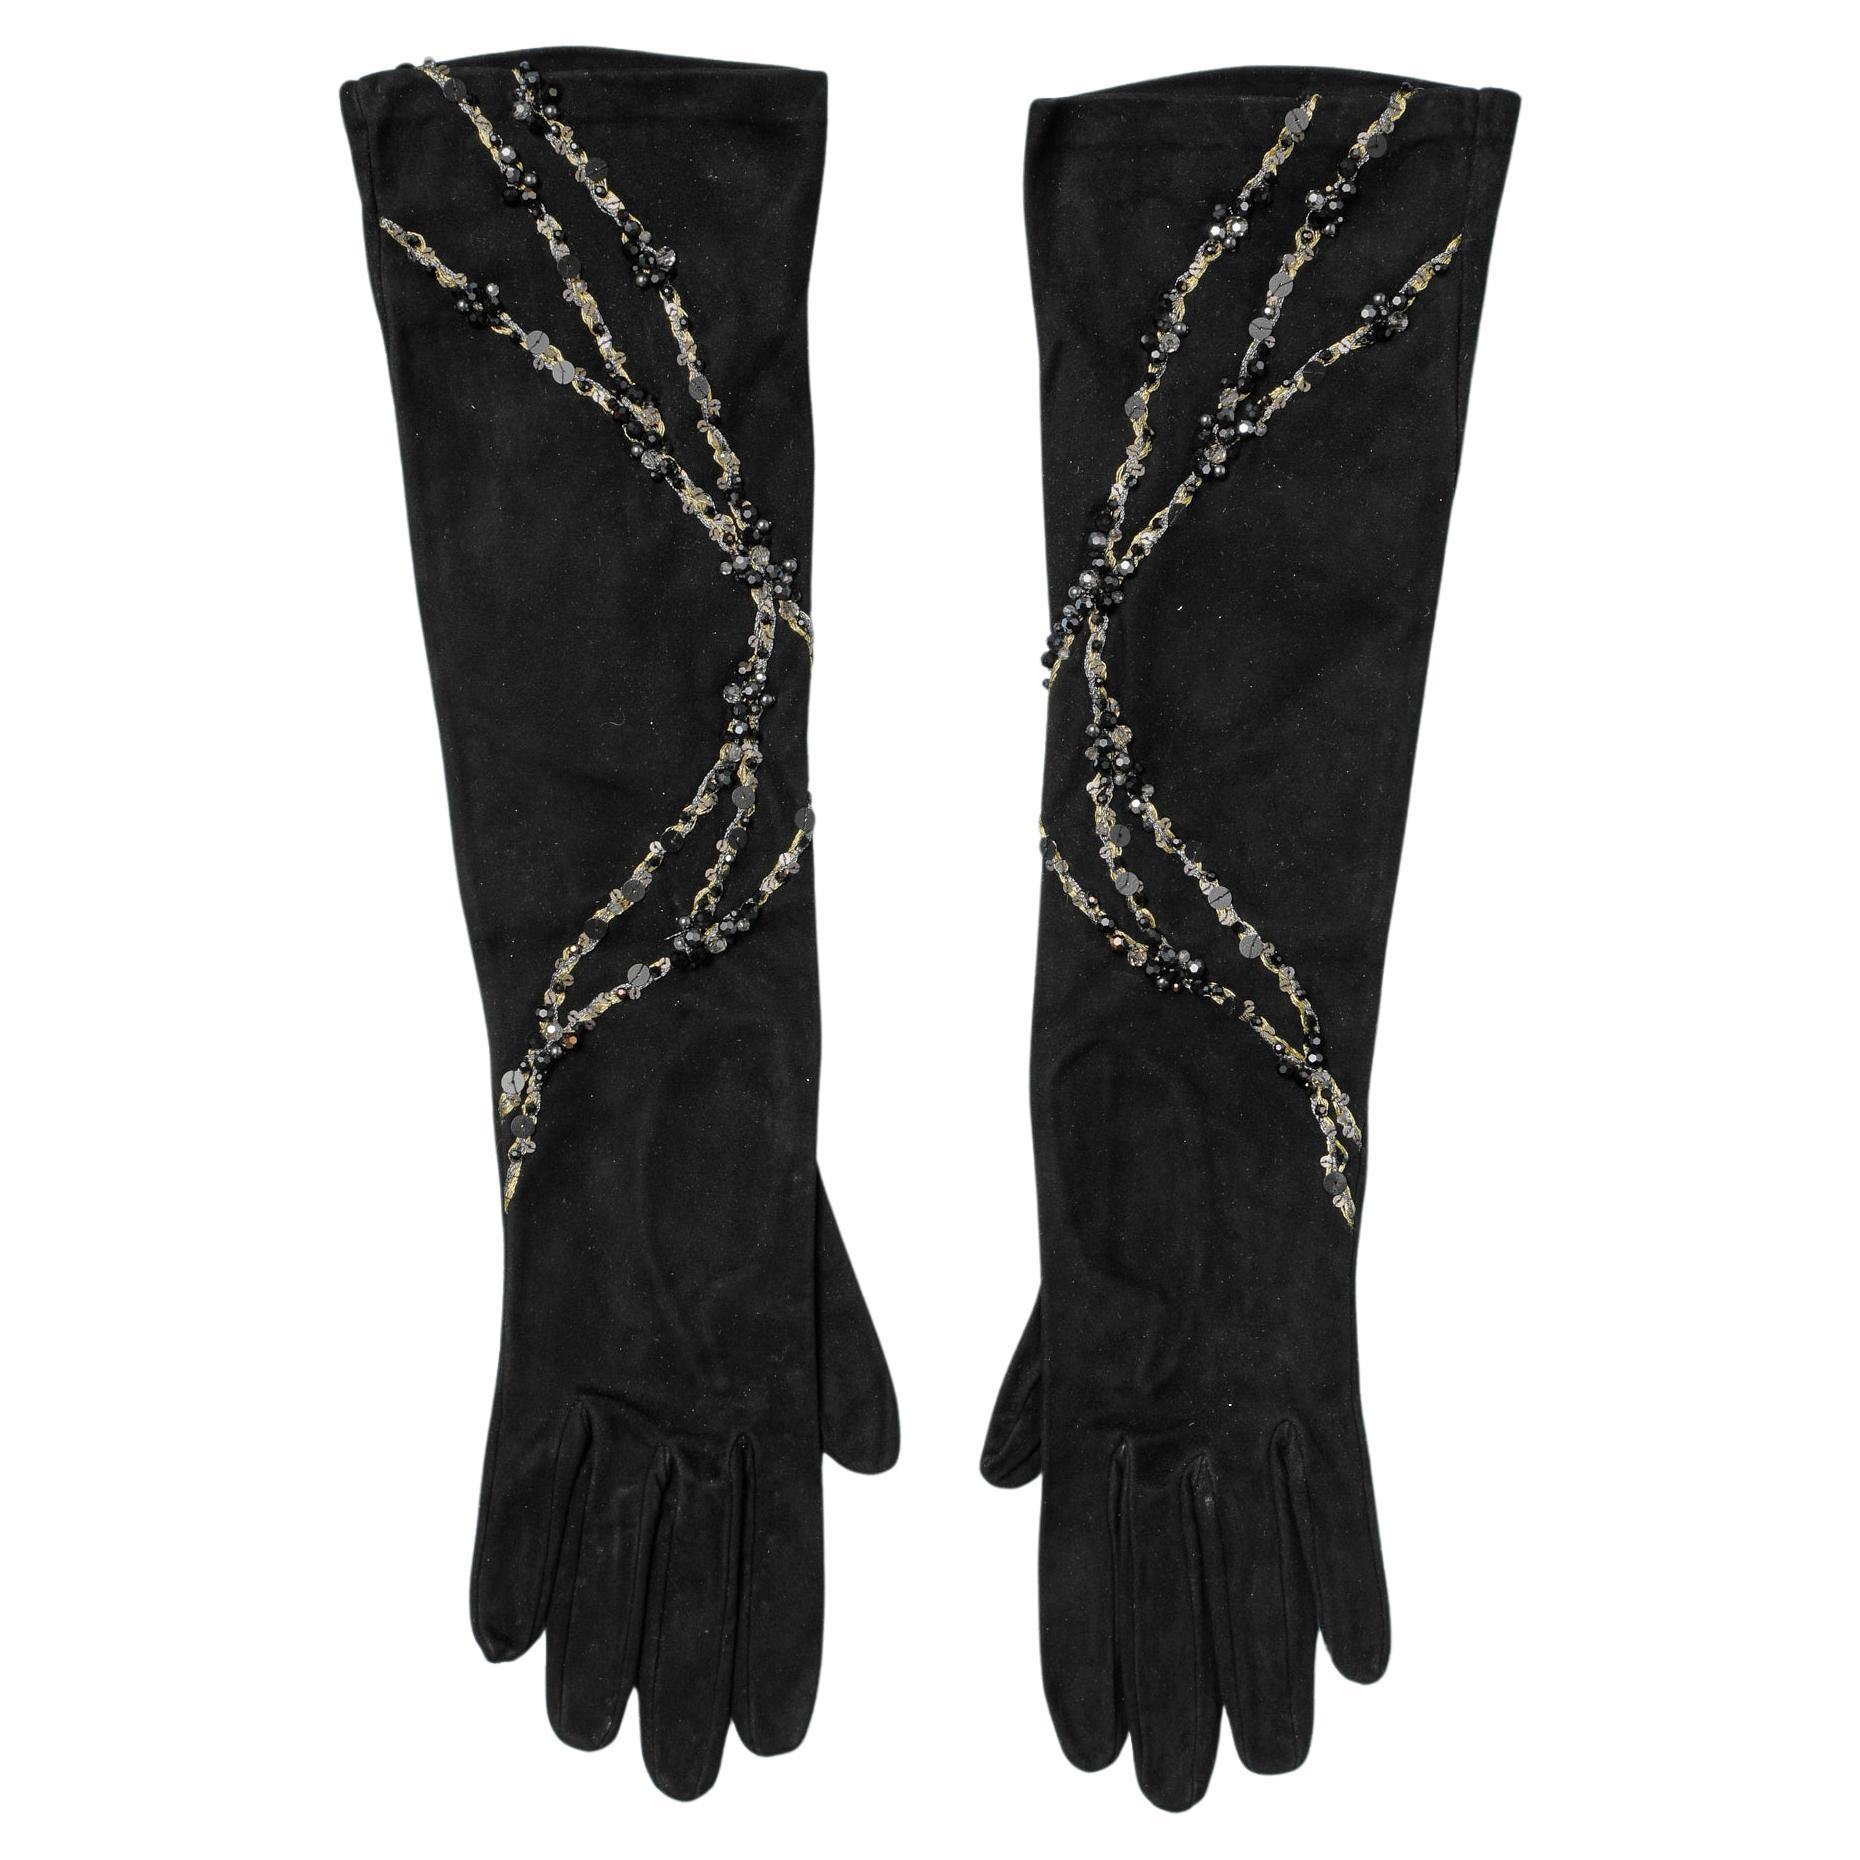 Black suede evening gloves with lurex, sequin and beadwork Daniel Swarovski NEW